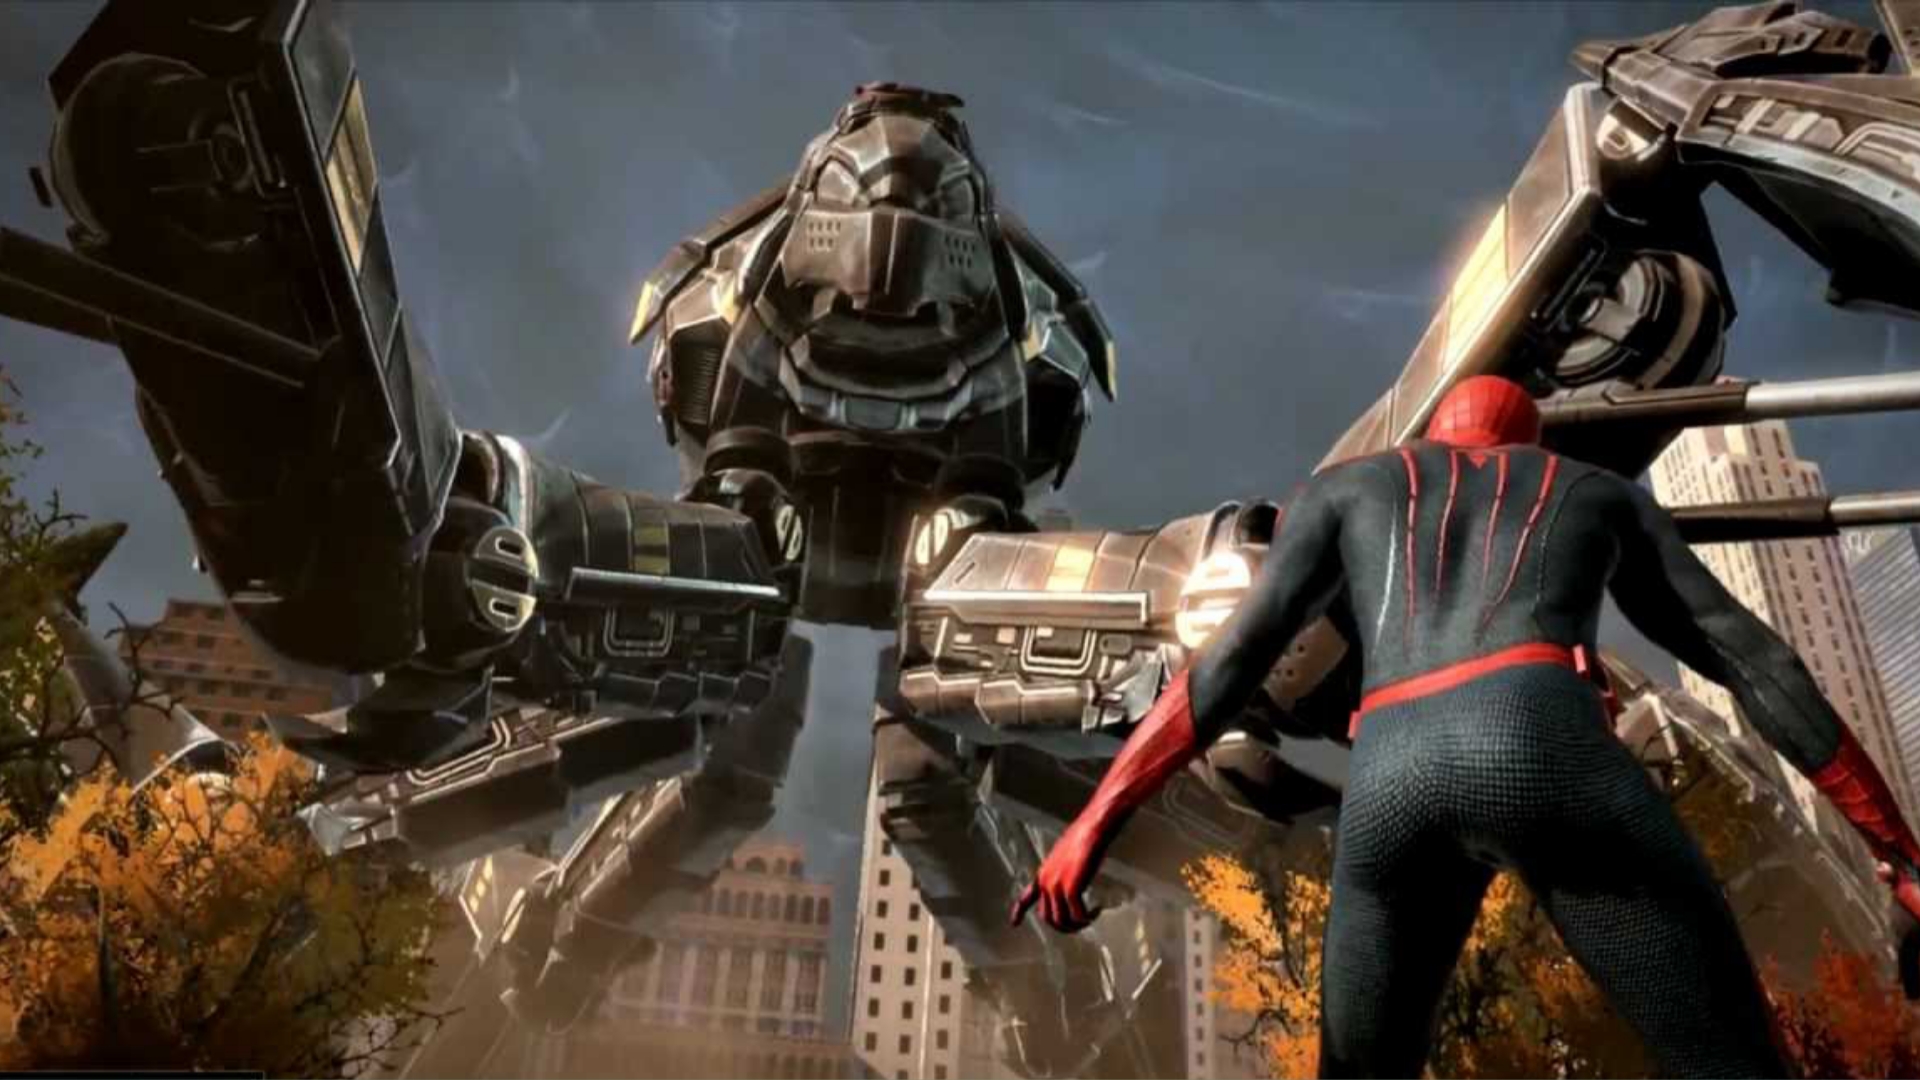 The amazing Spider-man игра. The amazing Spider-man 1 игра. The amazing Spider-man игра геймплей. Человек паук игра 2012.